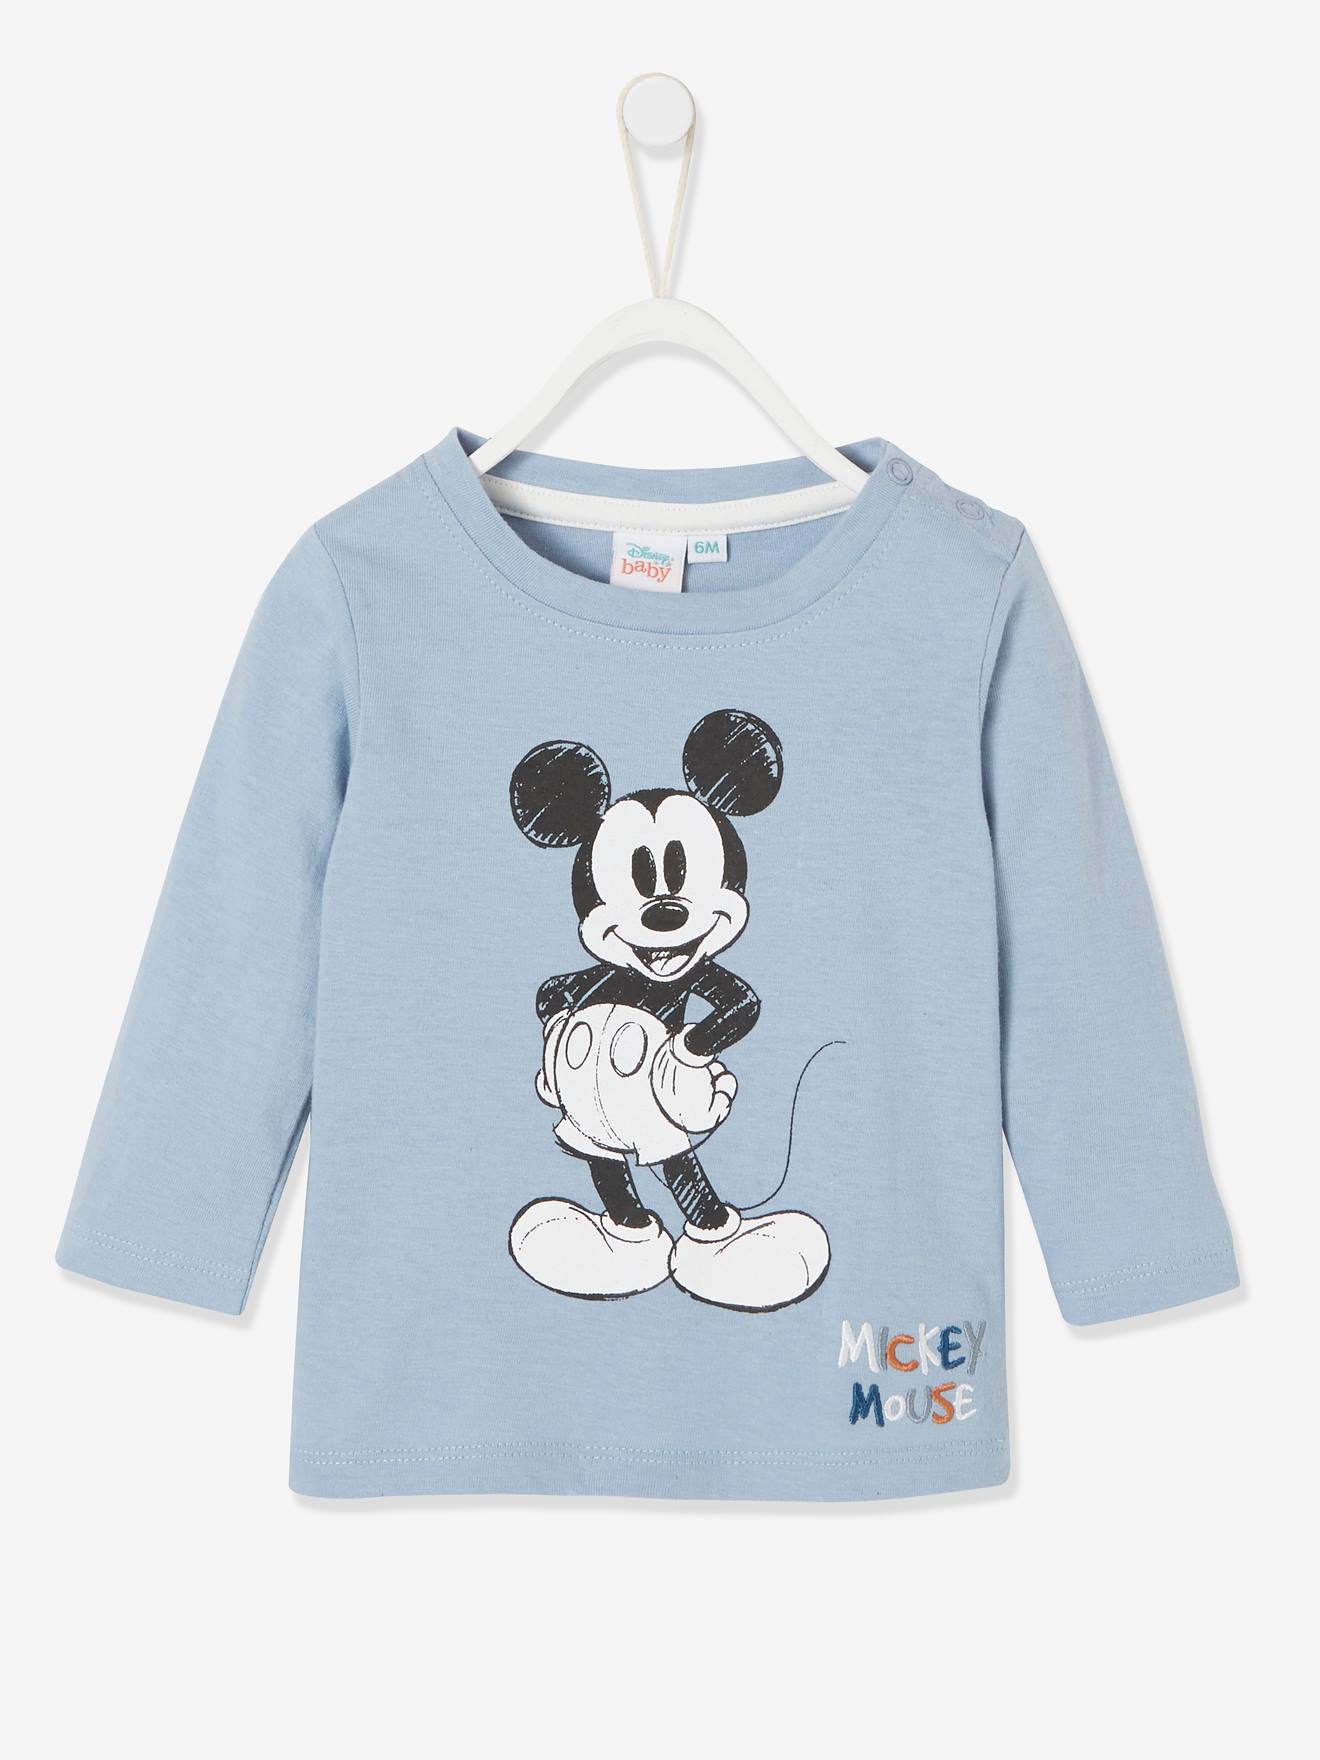 Micky Maus Baby Shirt Disney MICKY MAUS